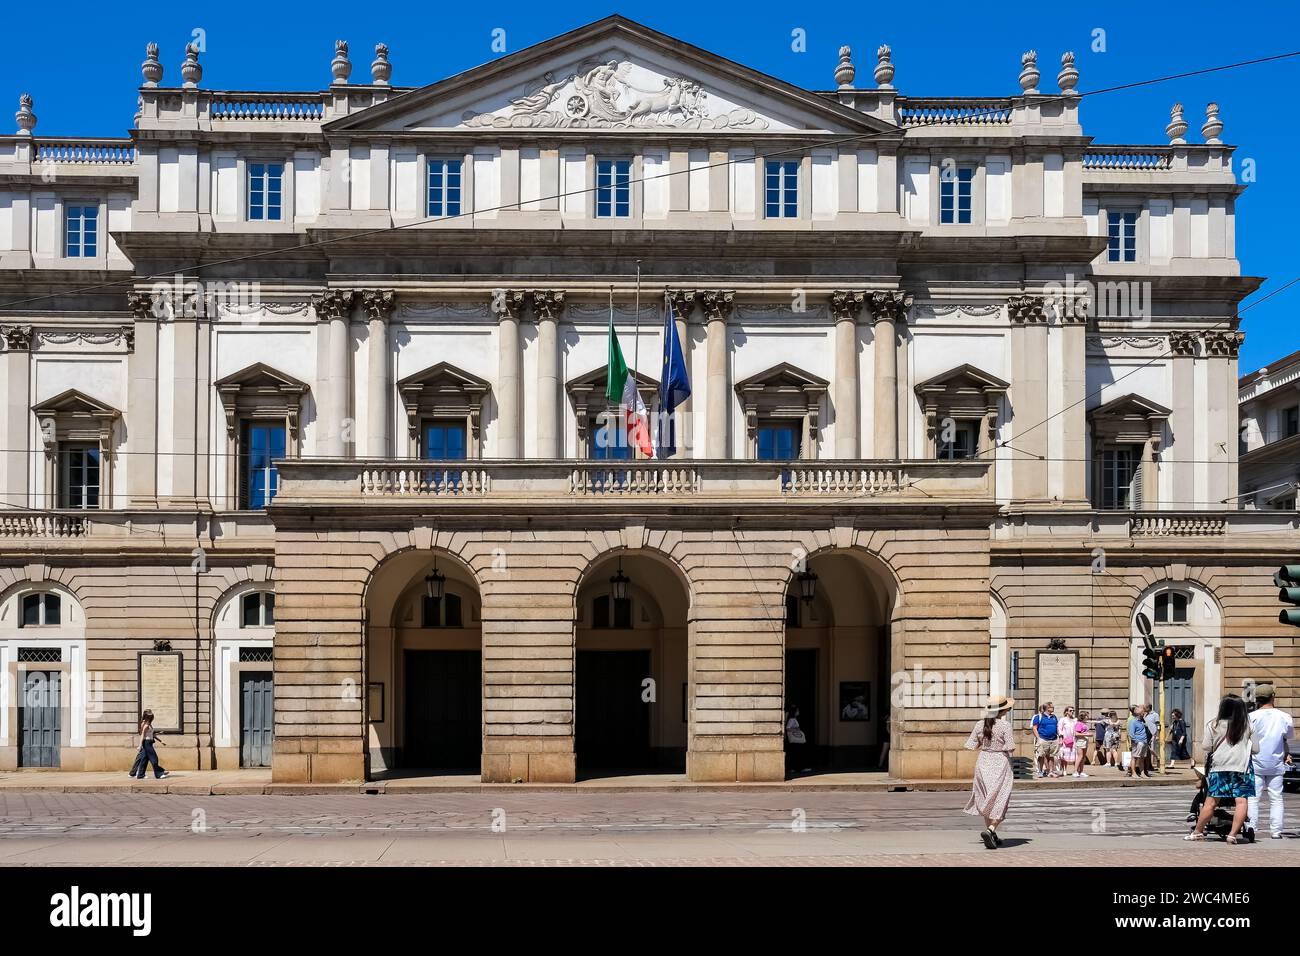 Äußere der La Scala, einem berühmten Opernhaus in Mailand, auf der Piazza della Scala. Stockfoto